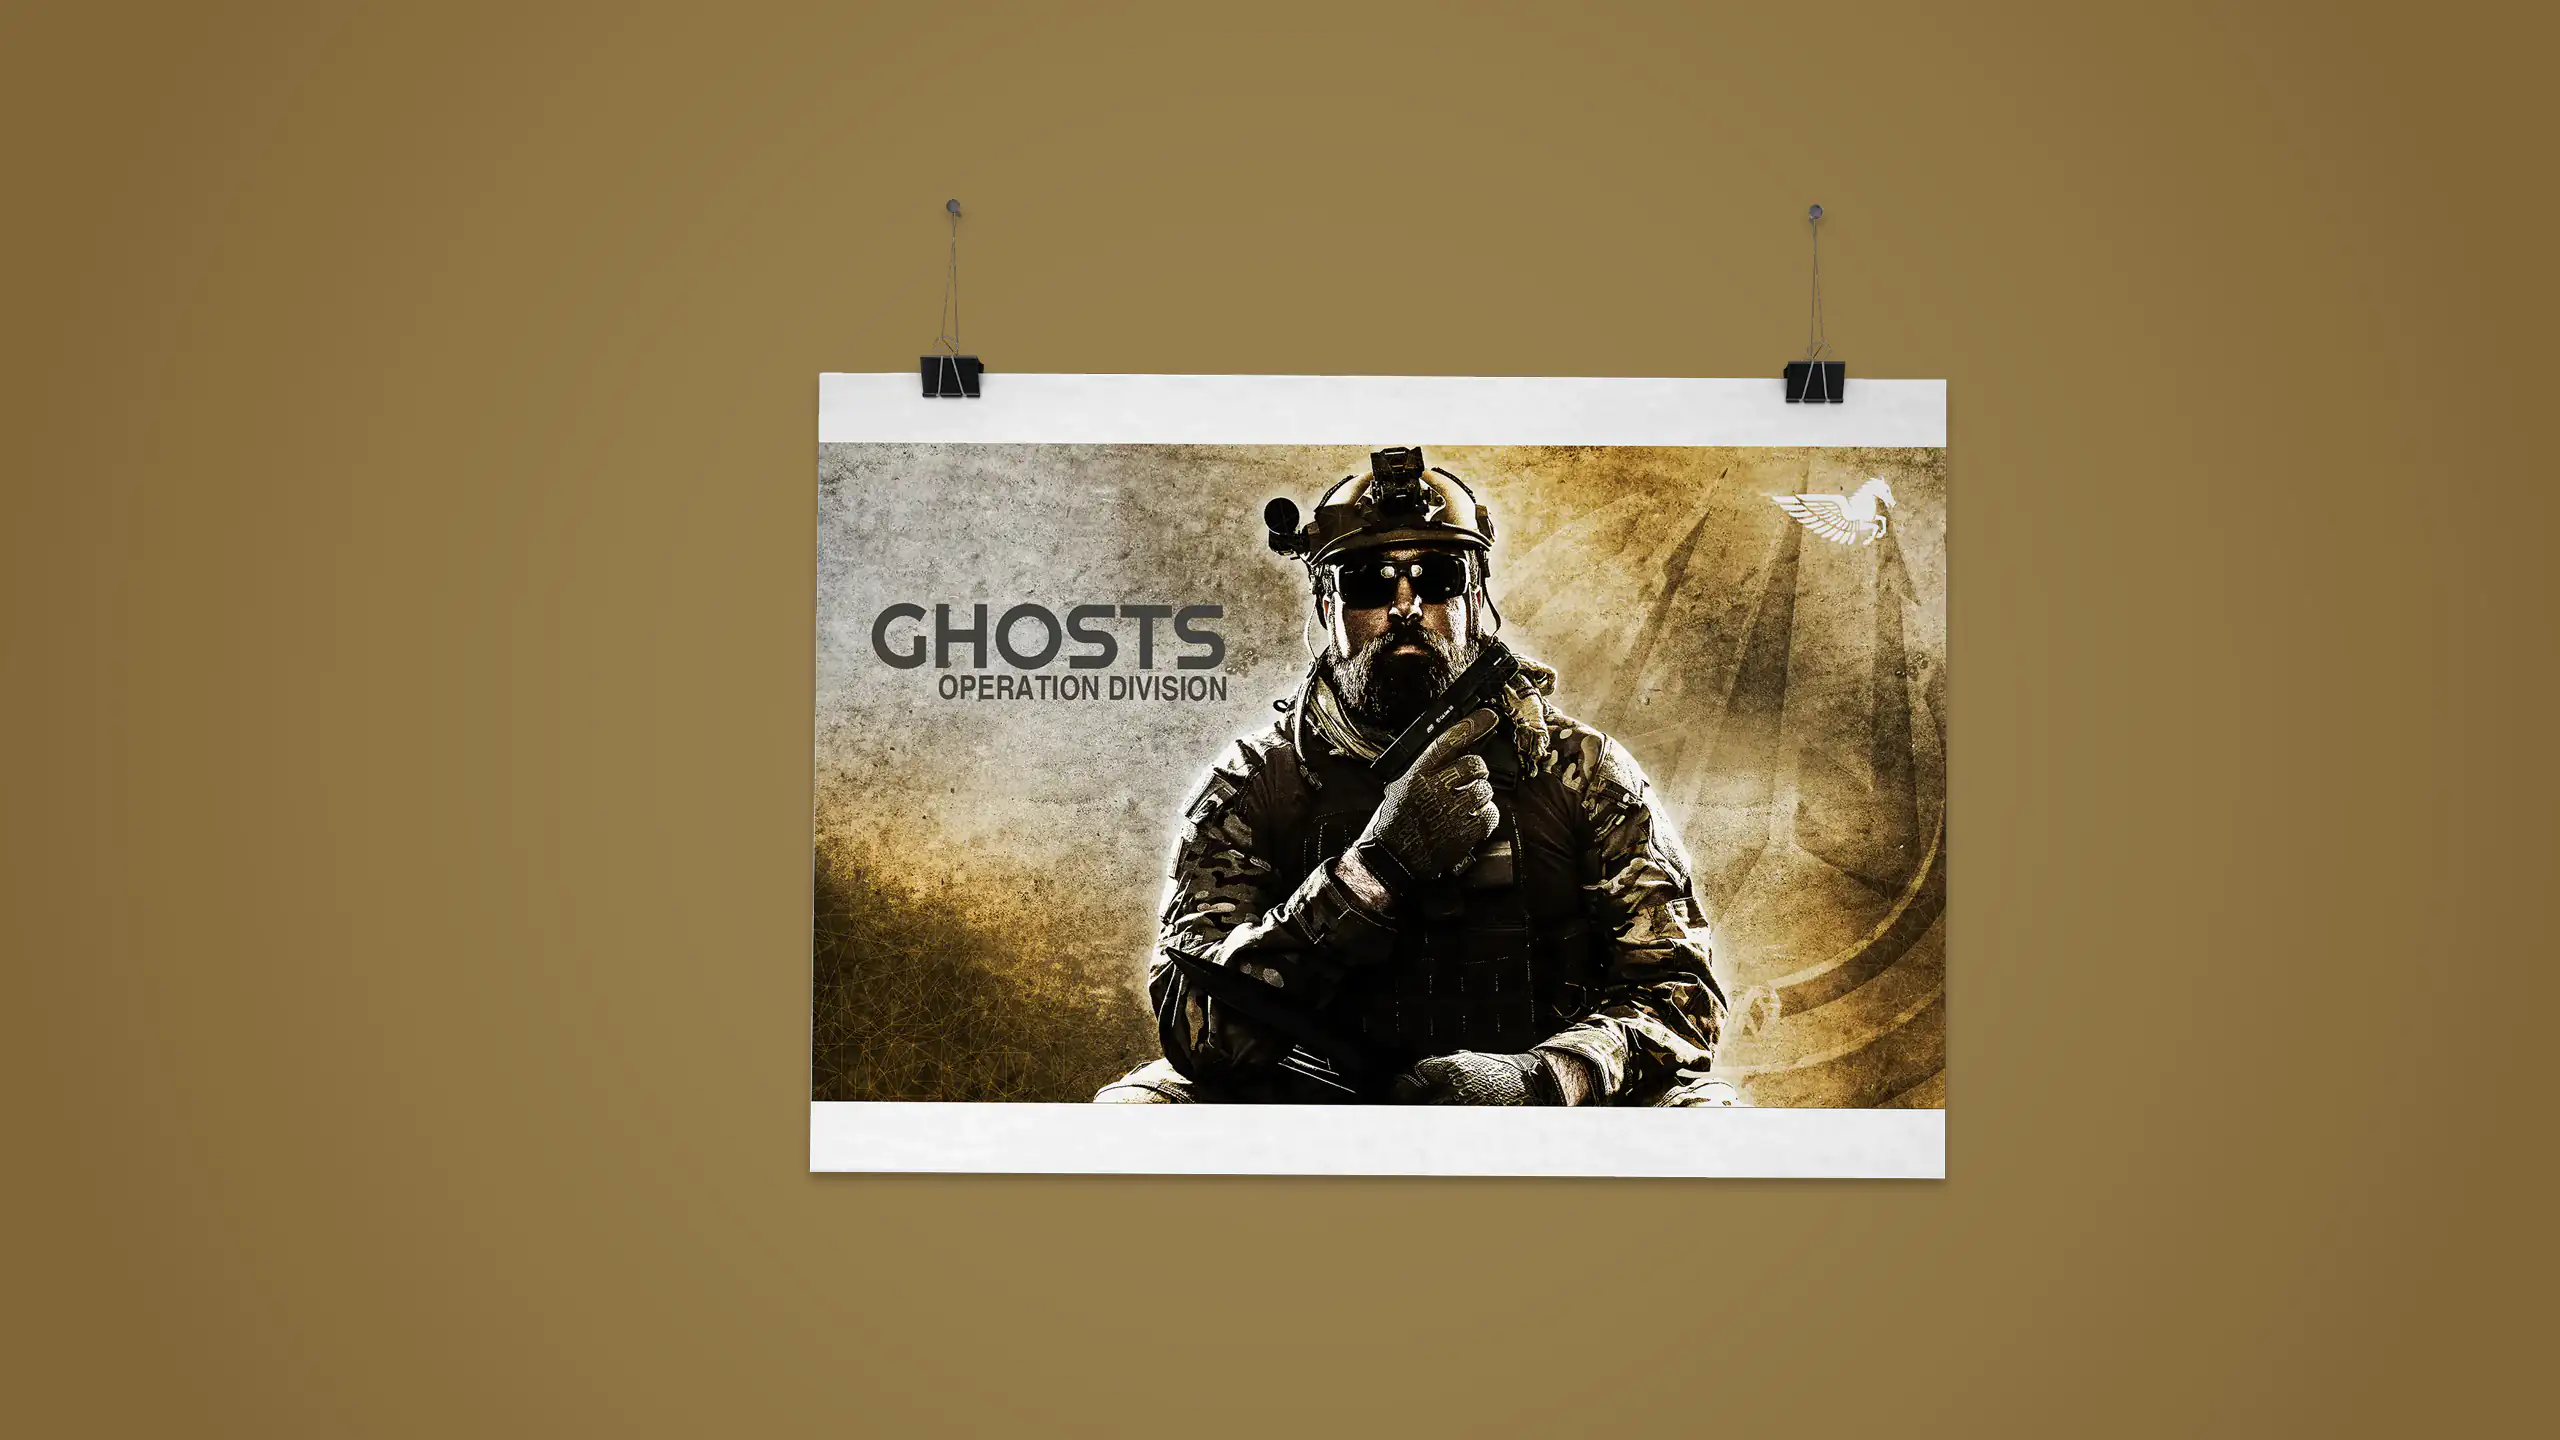 Postermotiv des Aegis e.V.-Spielers "Ghost" auf braunem Hintergrund